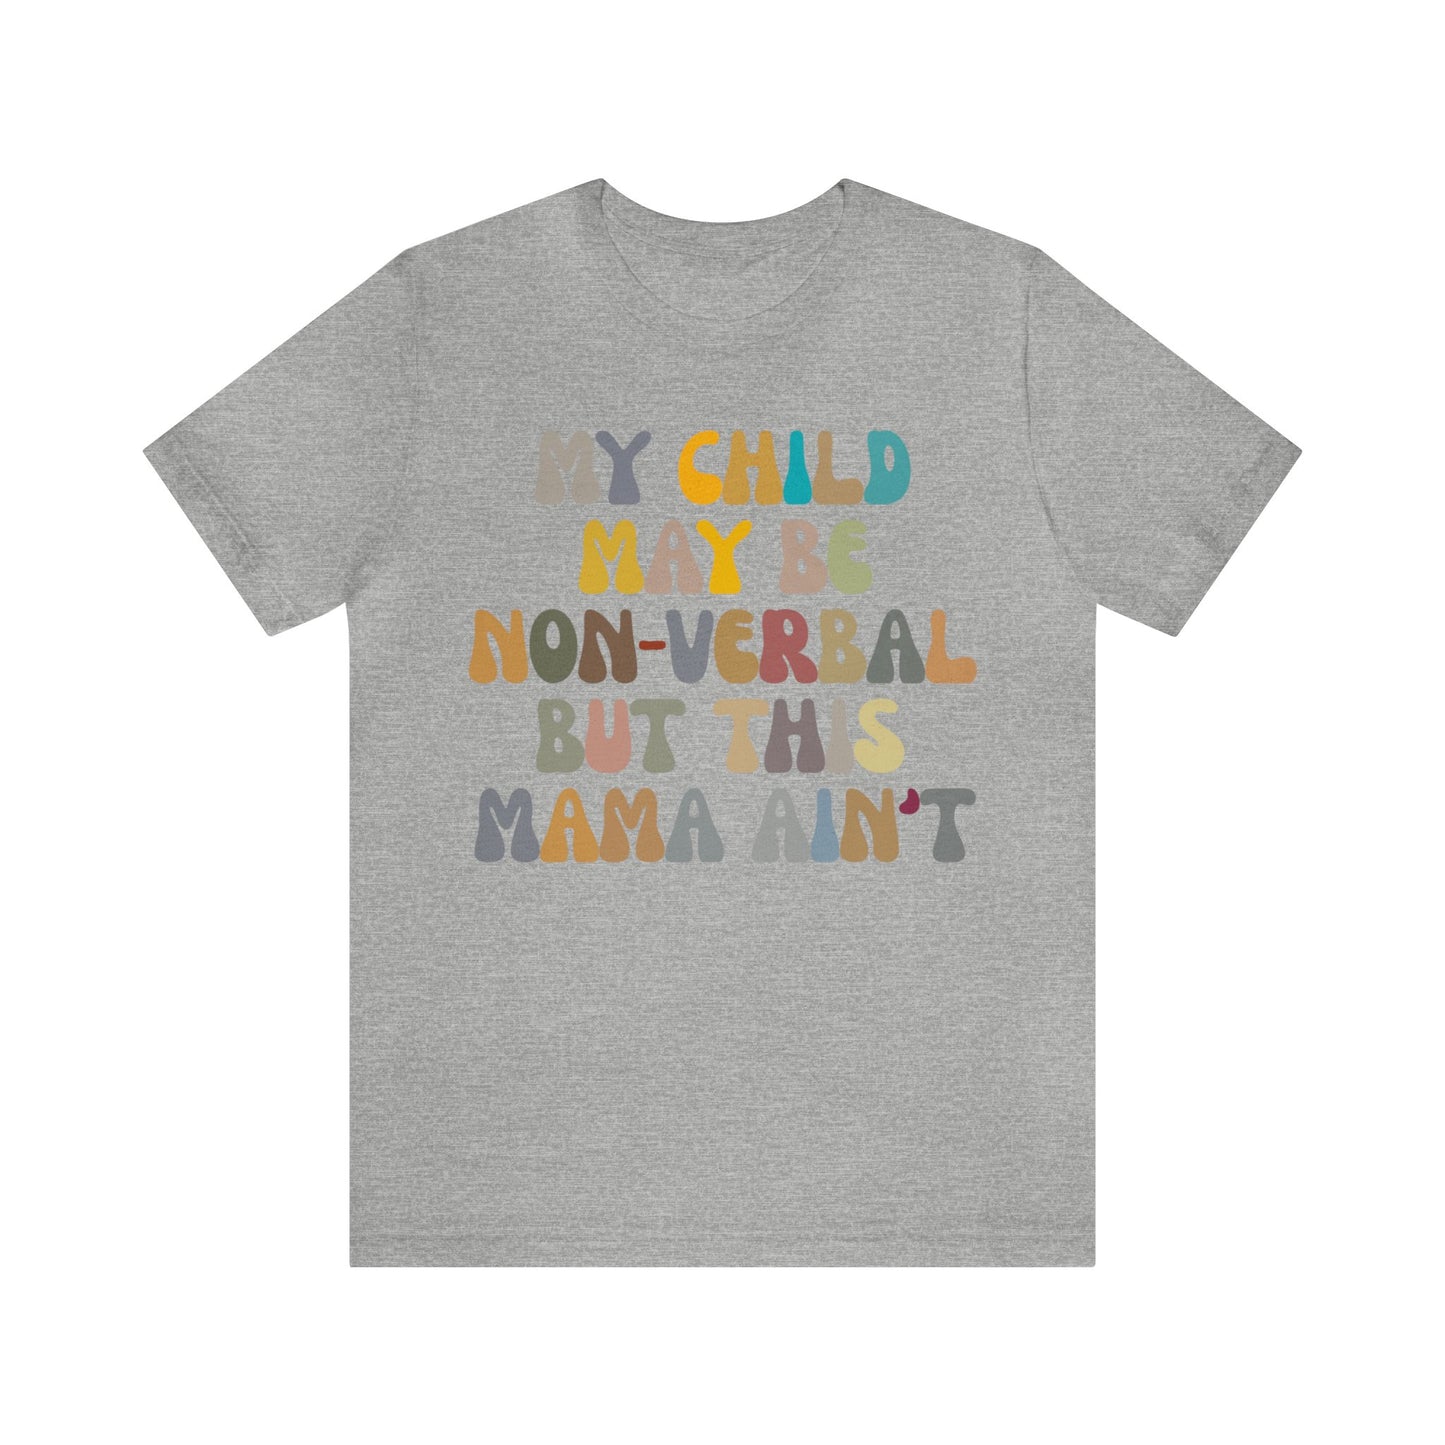 My Child May Be Nonverbal But His Mama Ain't Shirt, Non-verbal Kid Mama Shirt, Autism Awareness Shirt Autism Mom Shirt for Mama, T1462